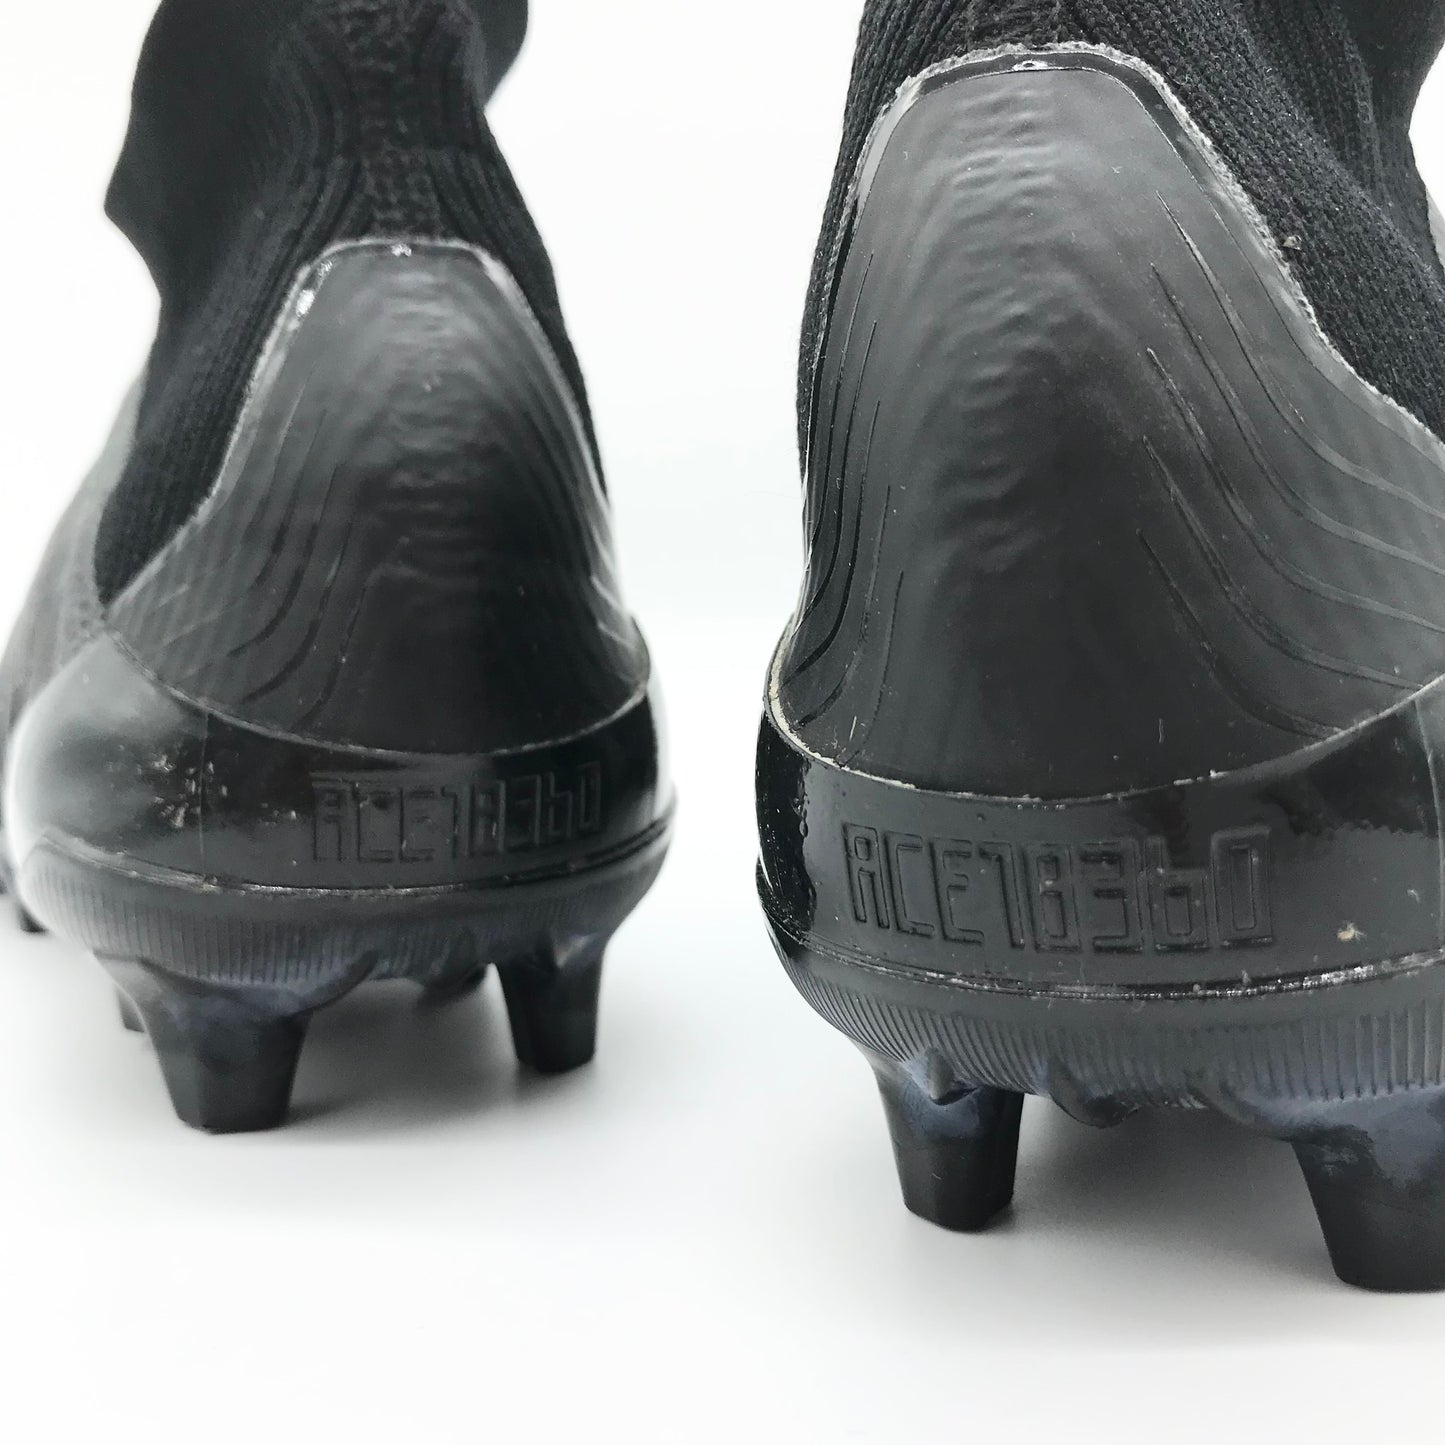 بول بوجبا تدريب البالية Adidas predor 18 + عينة النموذج الأولي